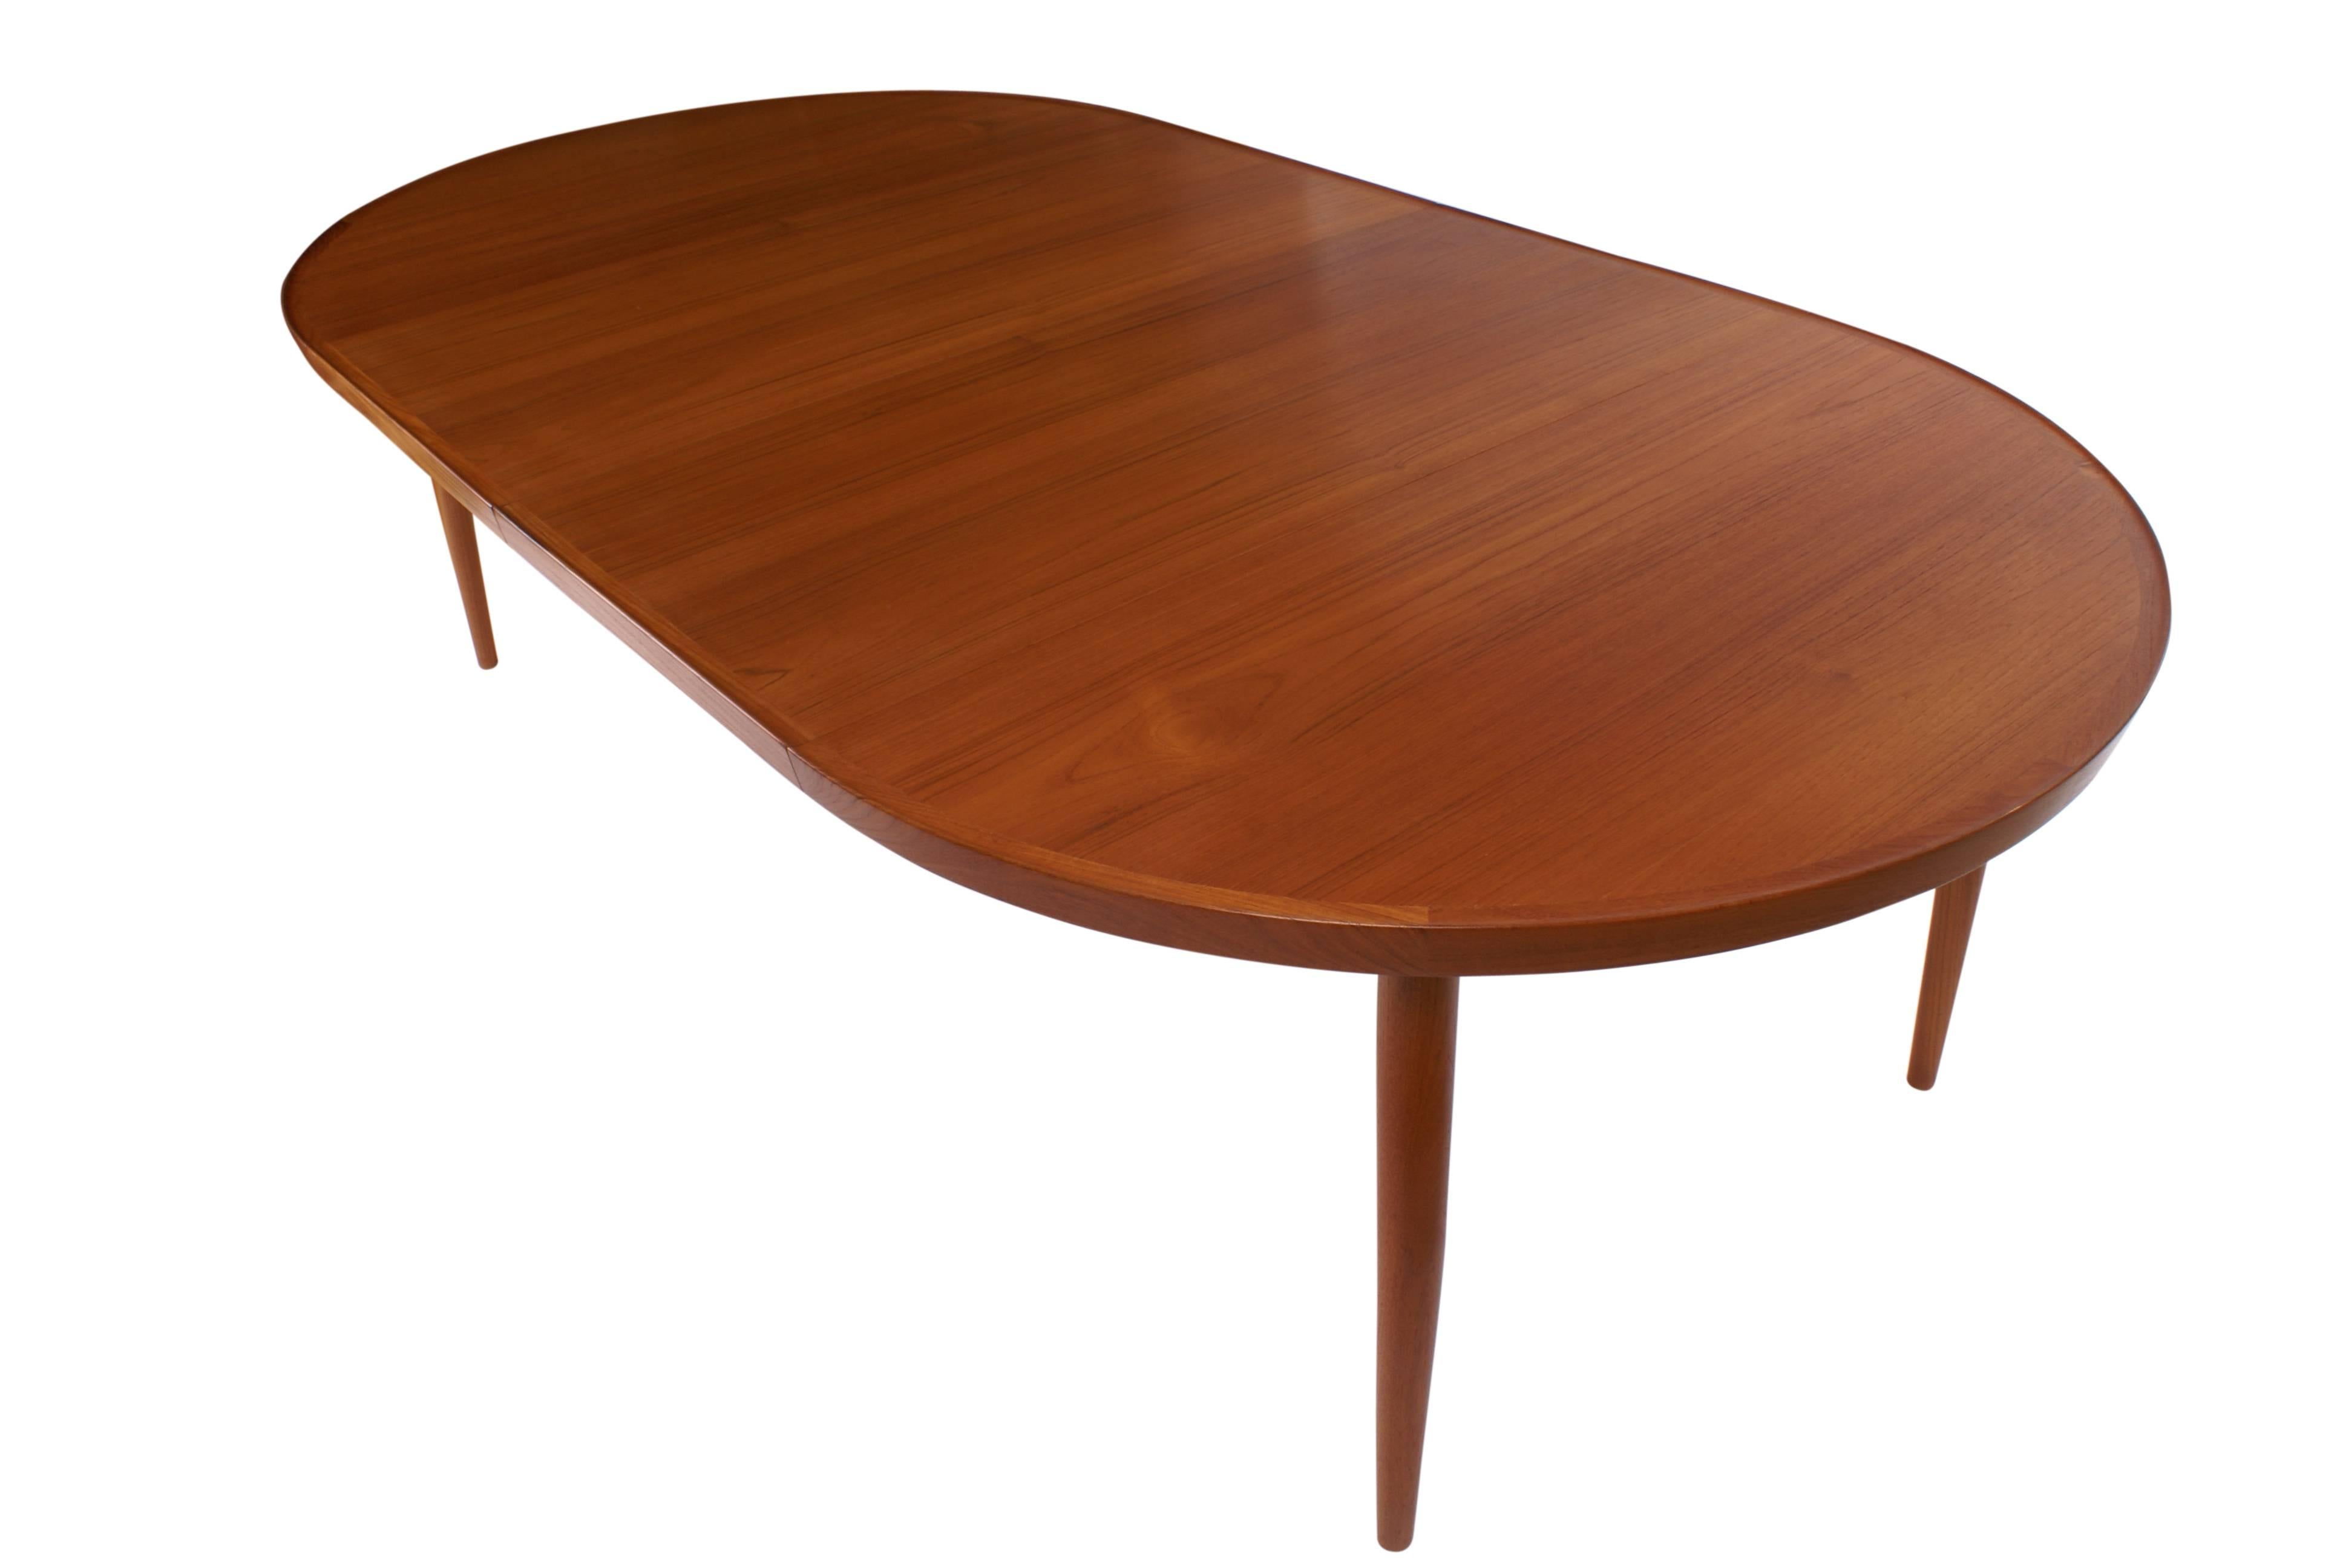 Finn Juhl NV56 extendable dining table by Niels Vodder in teak, model NV56, designed 1956.

Executed by master cabinetmaker Niels Vodder, Copenhagen, Denmark. Underside branded 'Niels Vodder Cabinetmaker/Copenhagen,